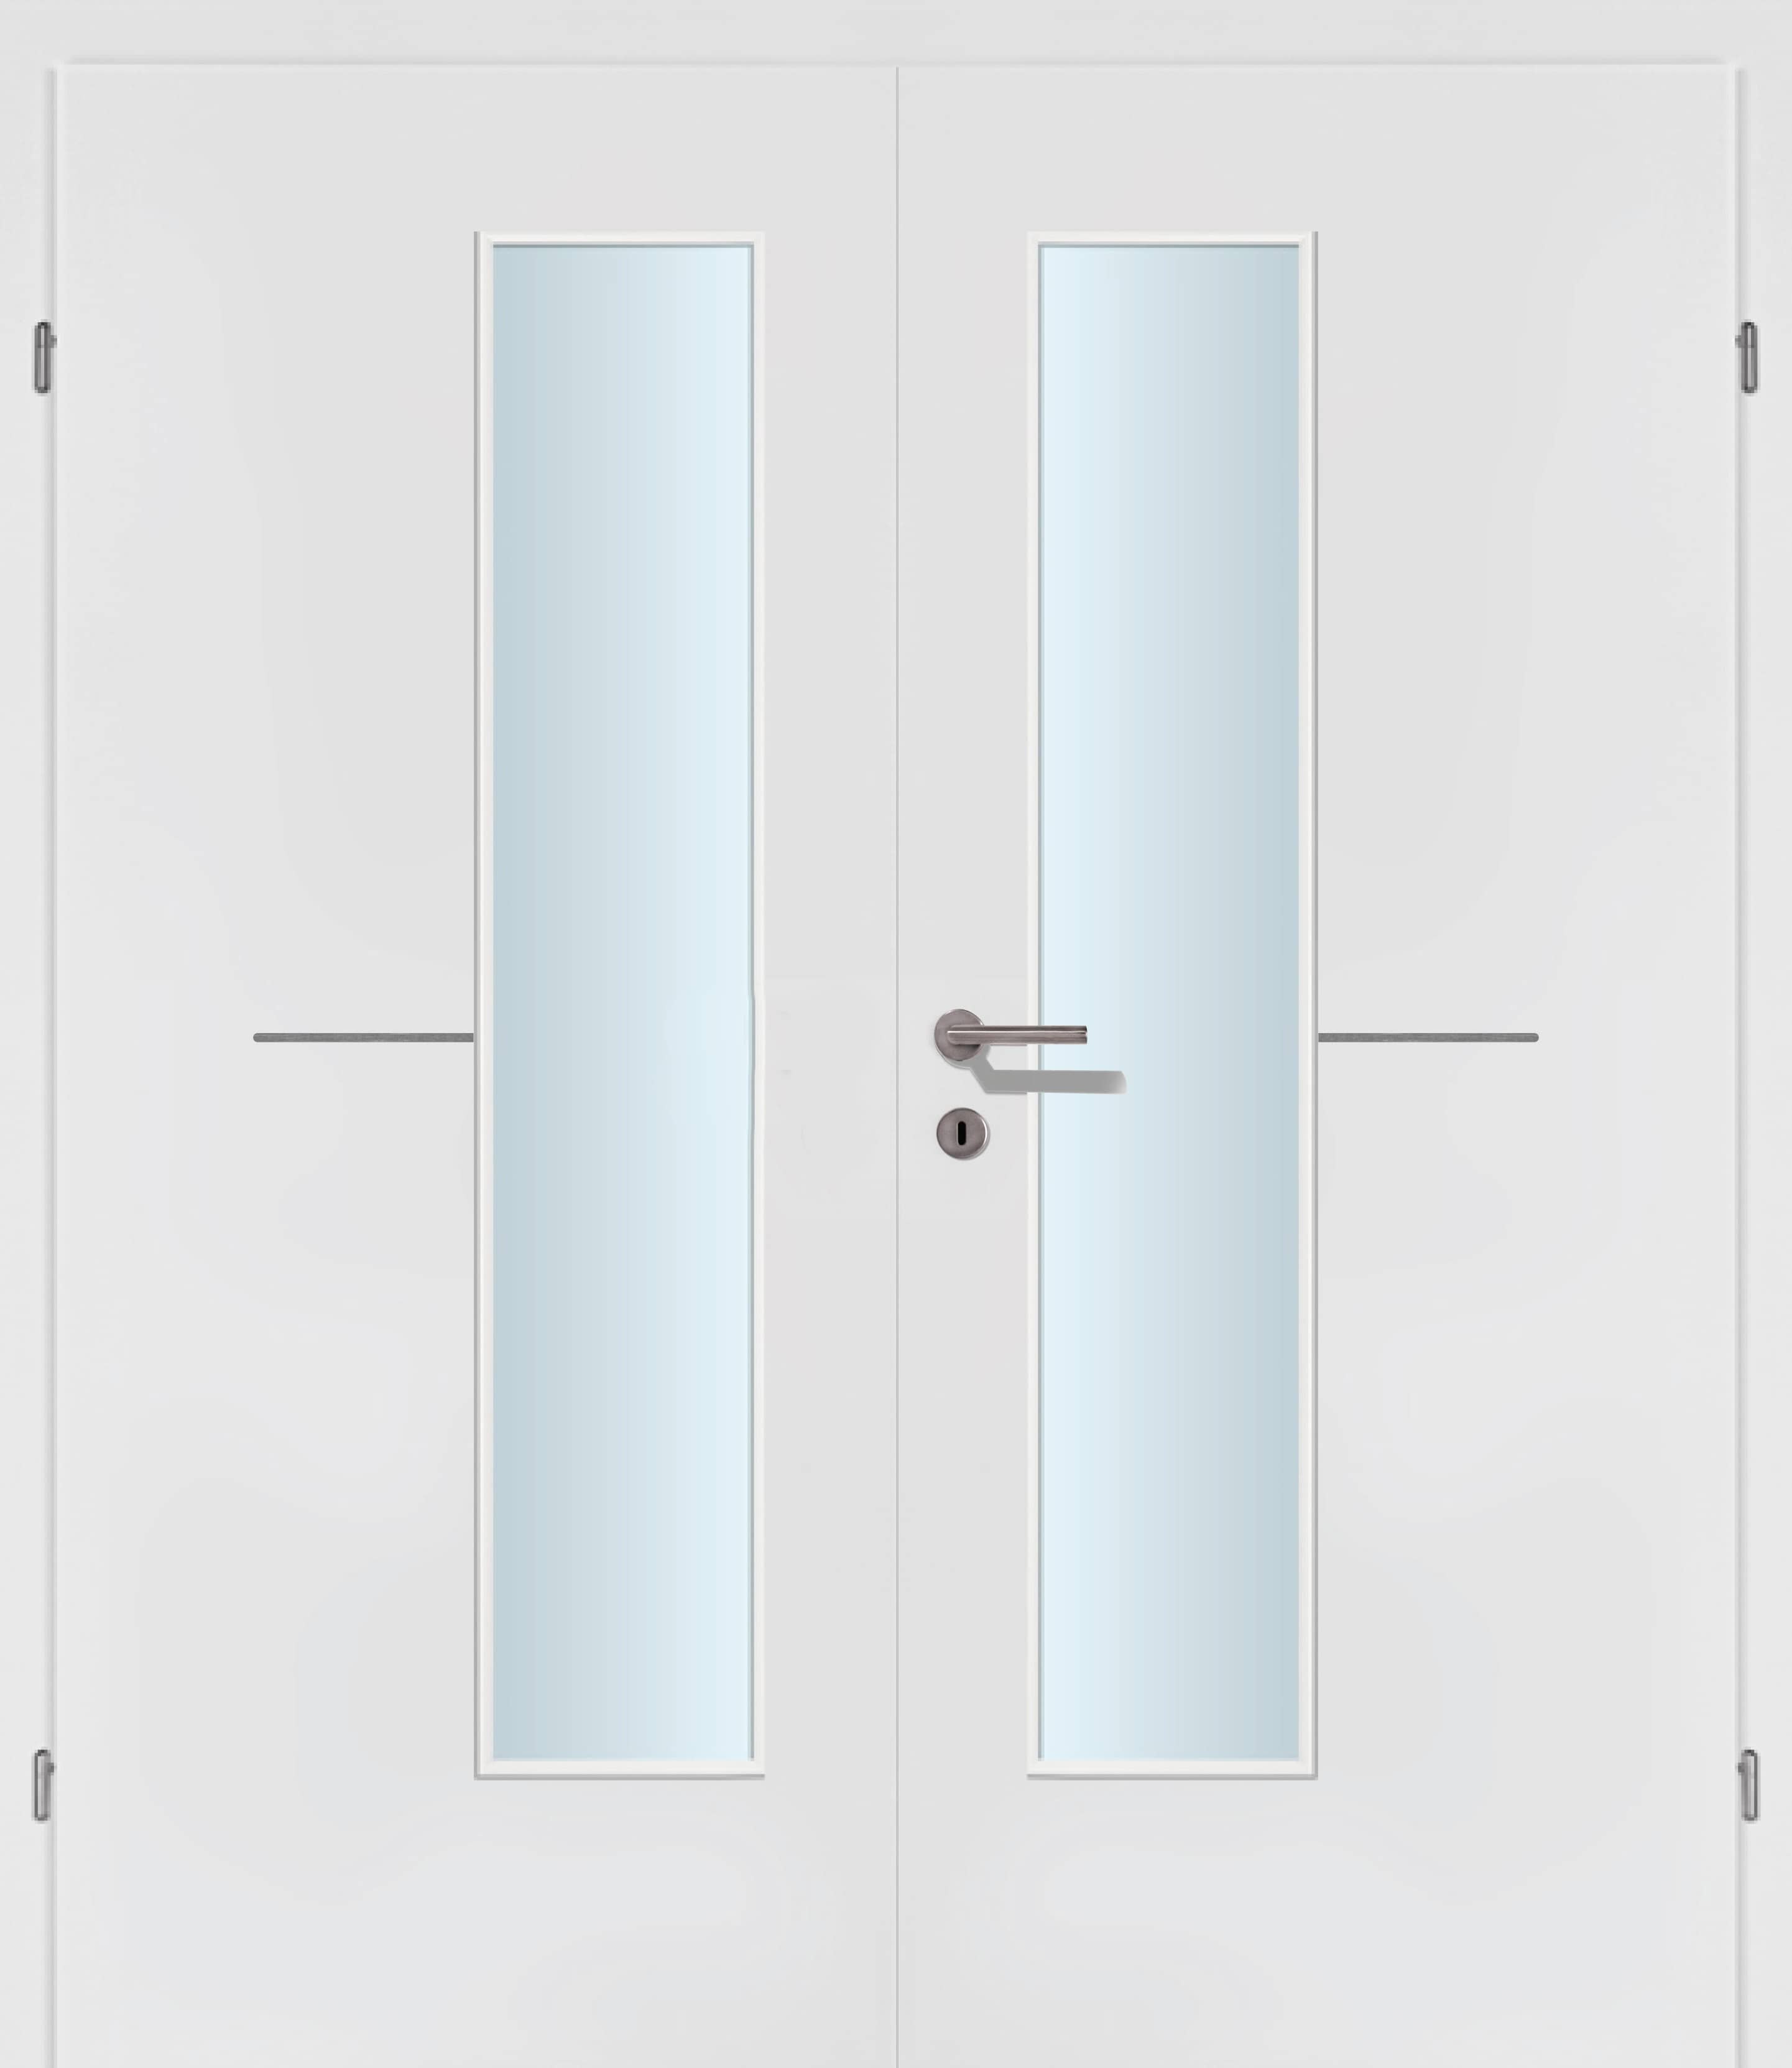 Selektion T47 Alu Effekt Lisenen weiss Innentür Inkl. Zarge (Türrahmen) Doppeltüre Inkl. Glaslichte EN Drückerseitig